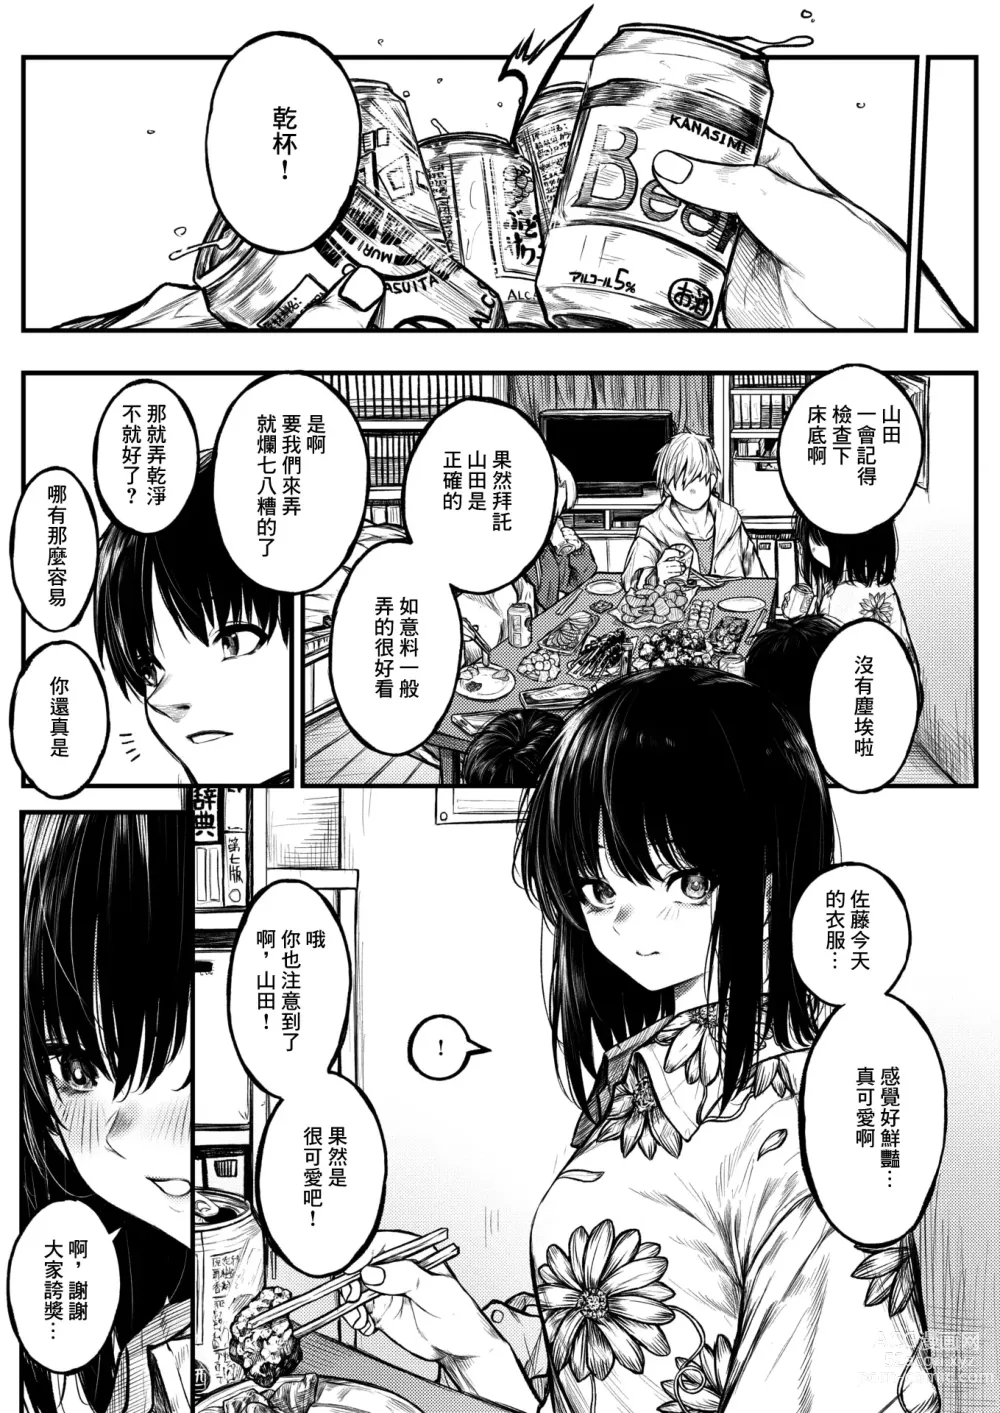 Page 3 of manga Koromogae